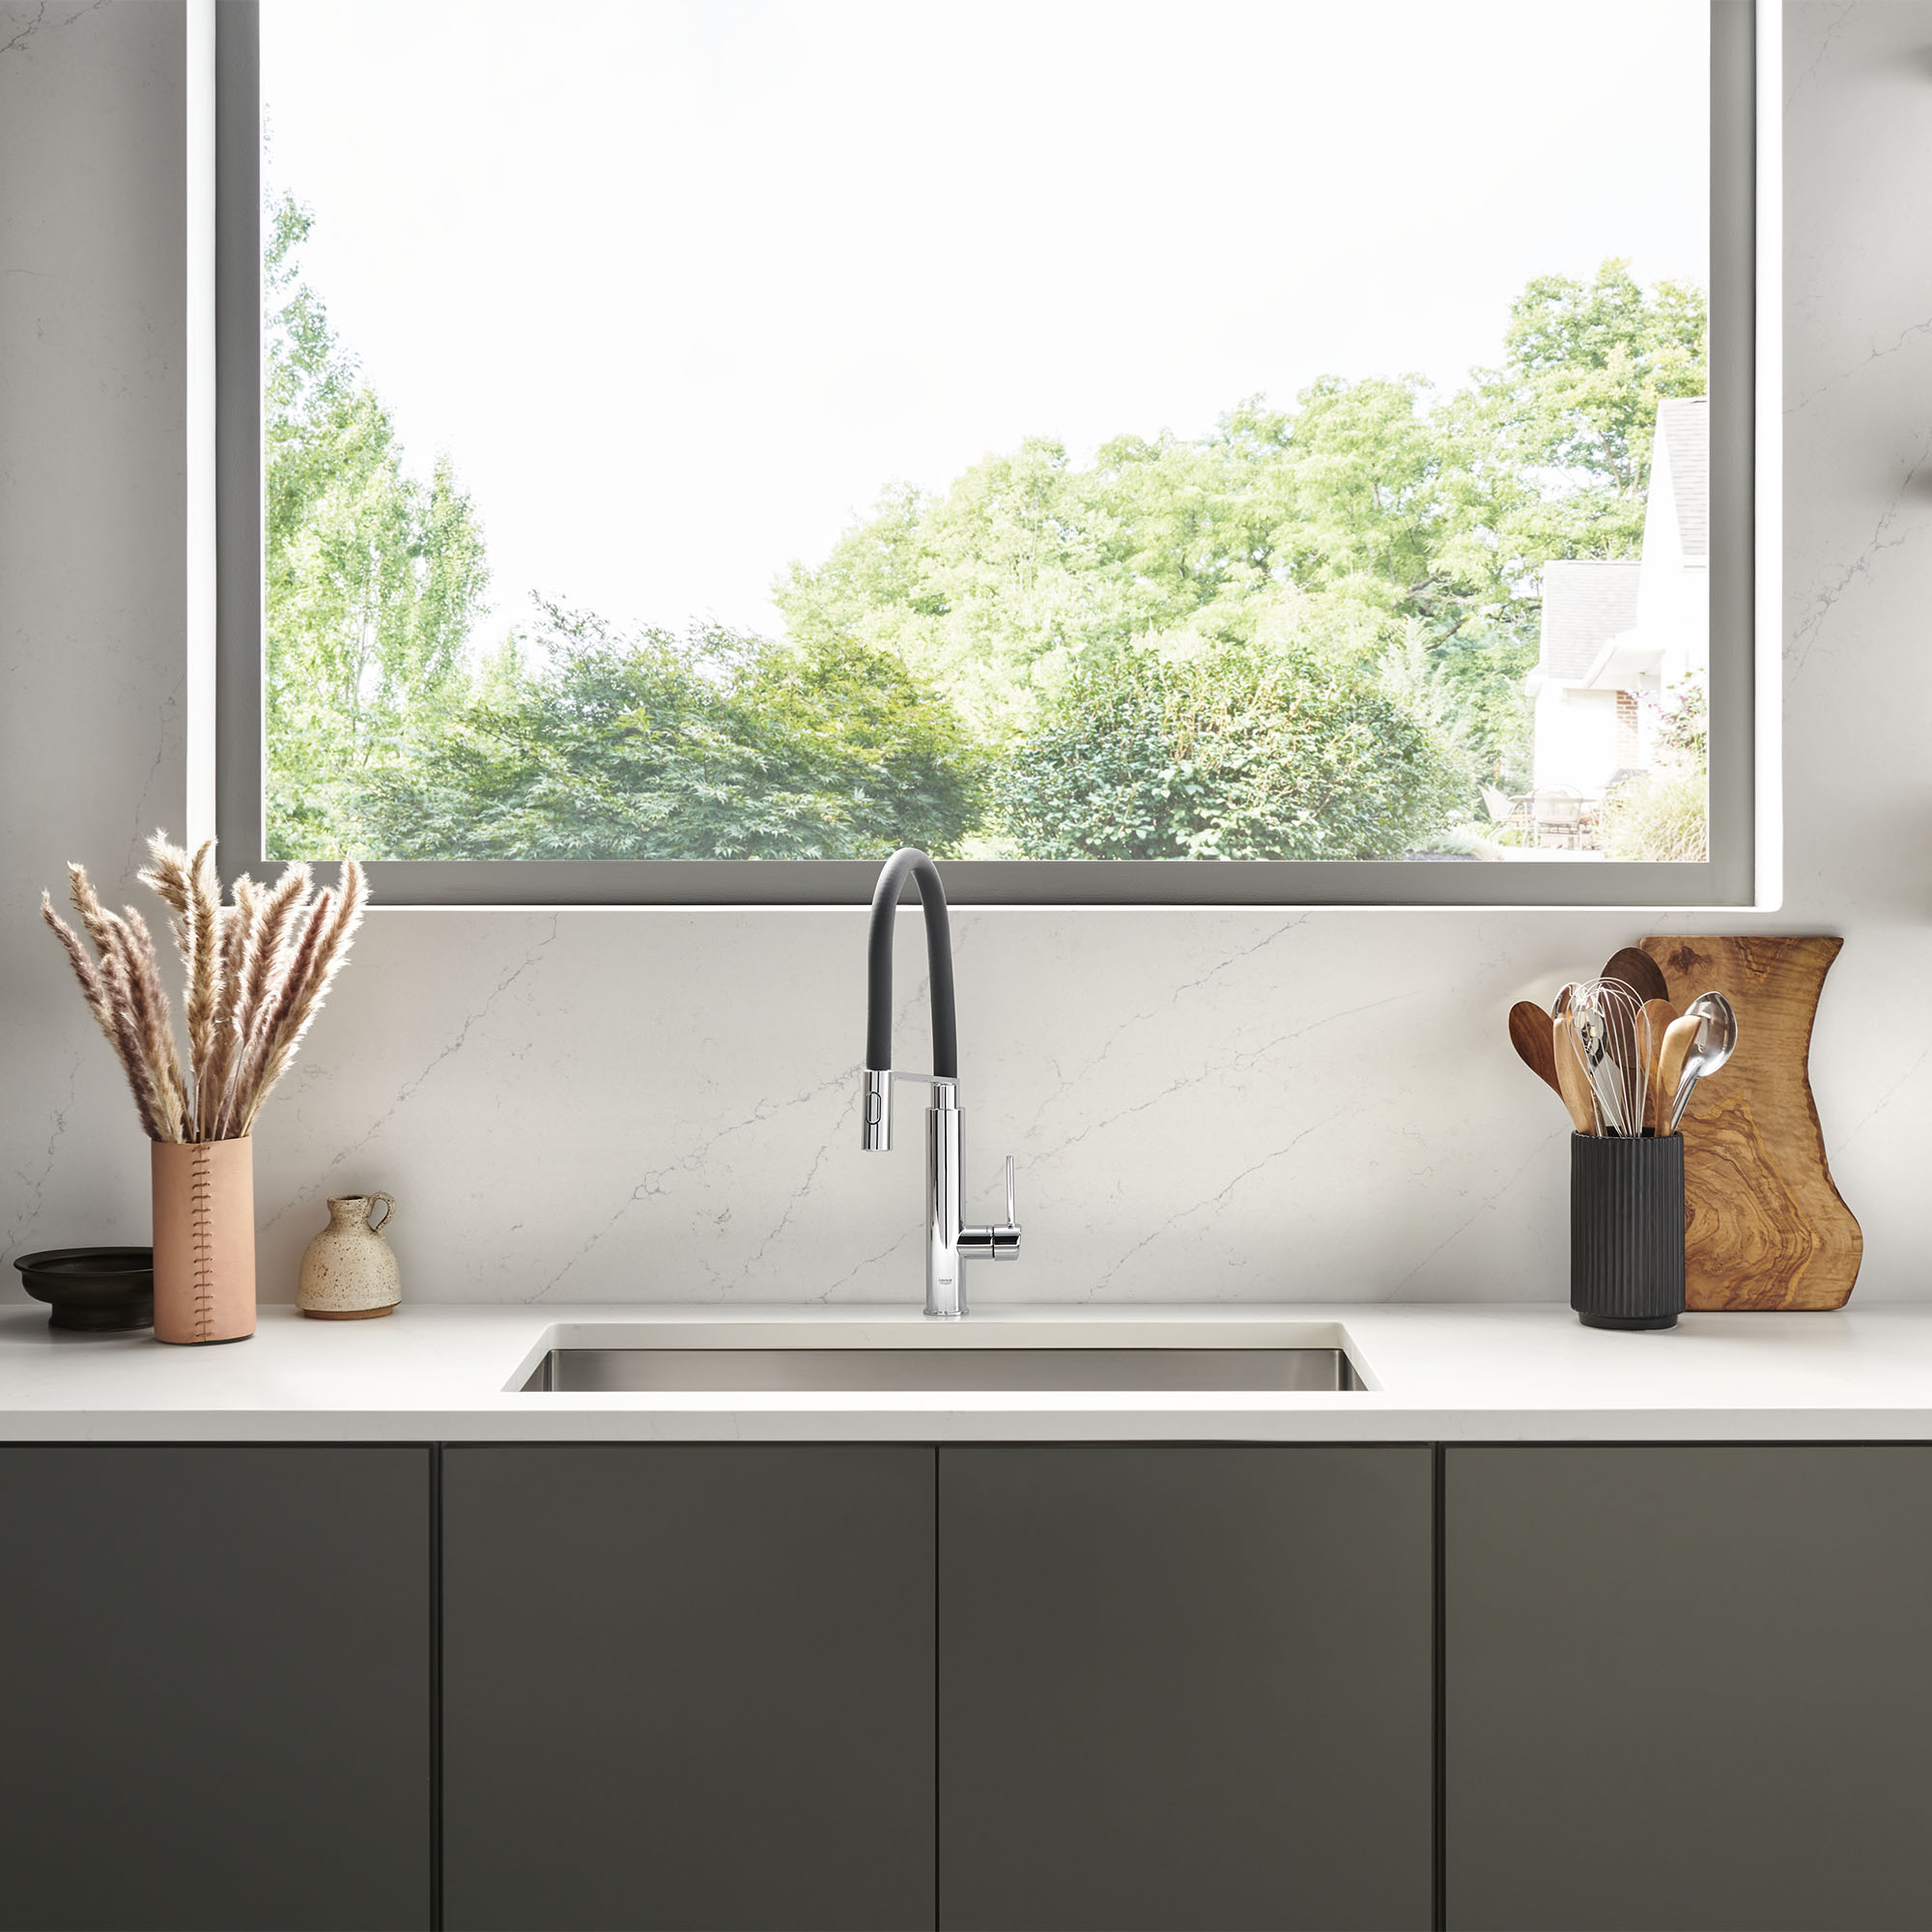 Concetto Single-Handle Semi-Pro Dual Spray Kitchen Faucet 1.75 GPM (6.6 L/min)